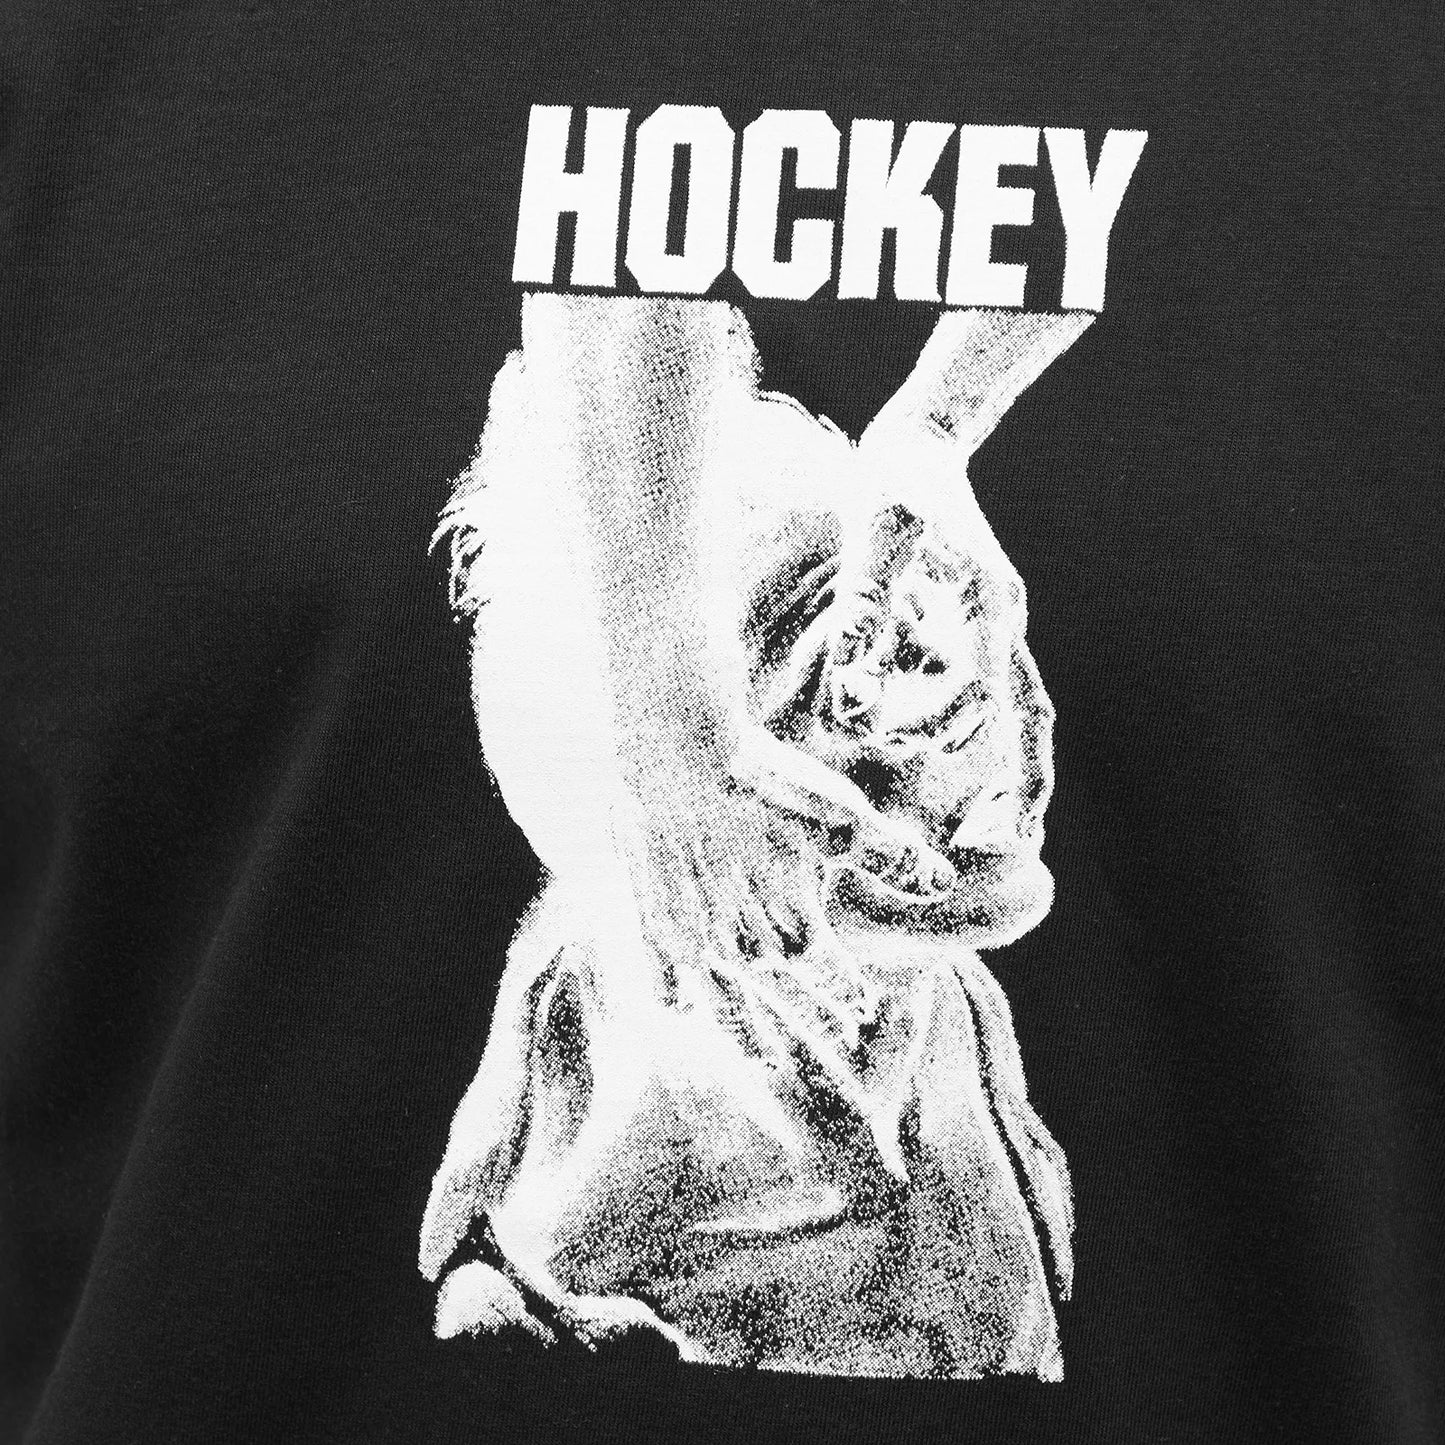 Hockey - Resuscitate T-shirt - Black